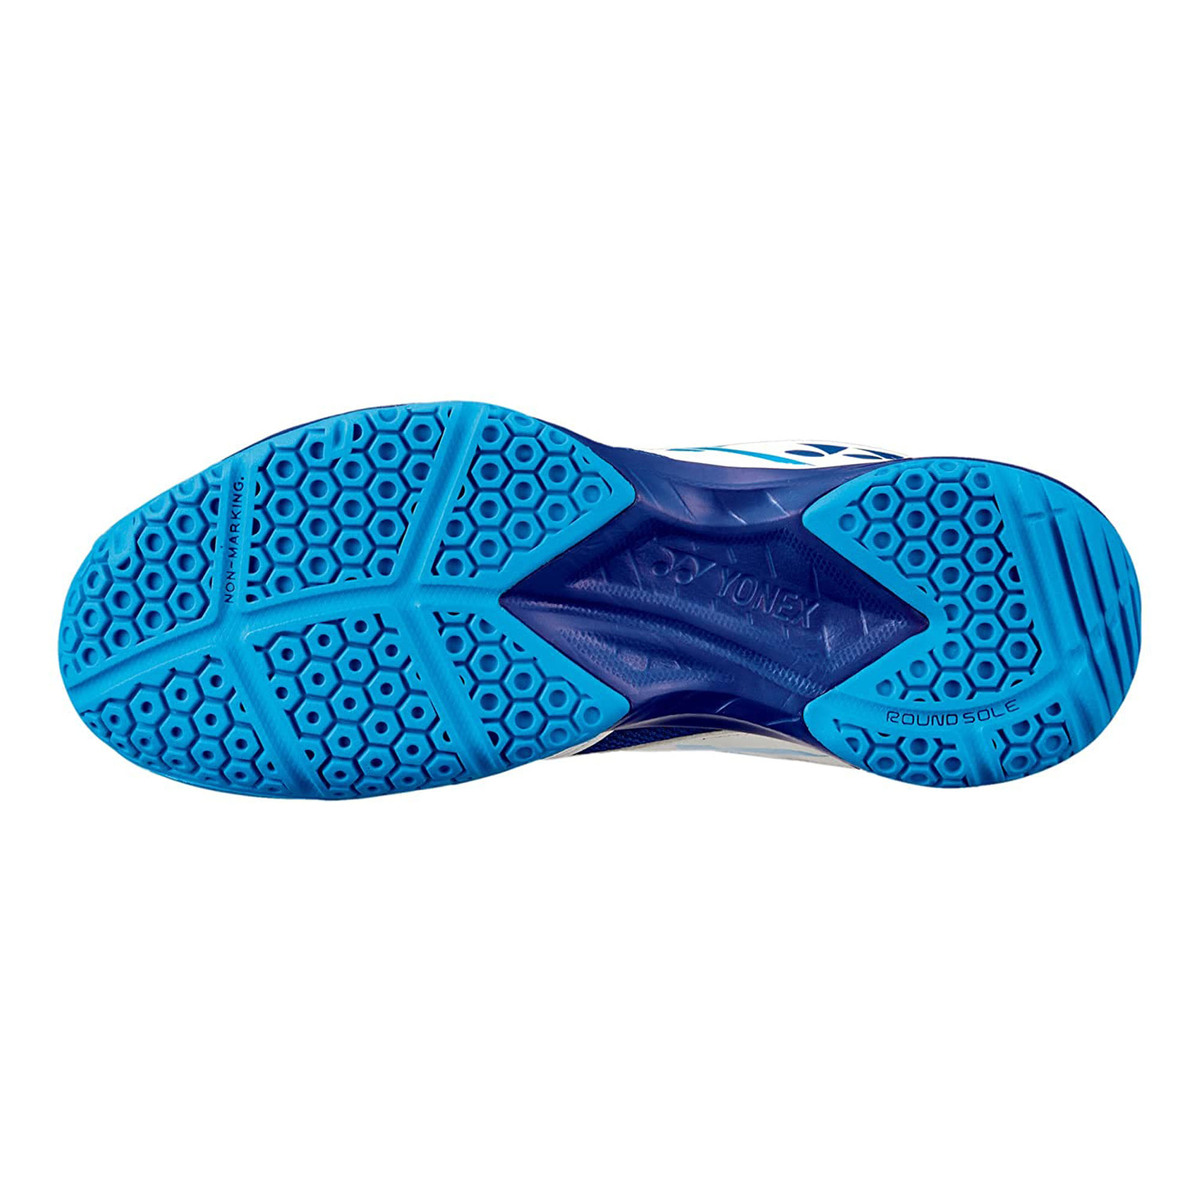 يونيكس حذاء تنس الريشة للرجال، SHB39EX، أبيض/أزرق، 44